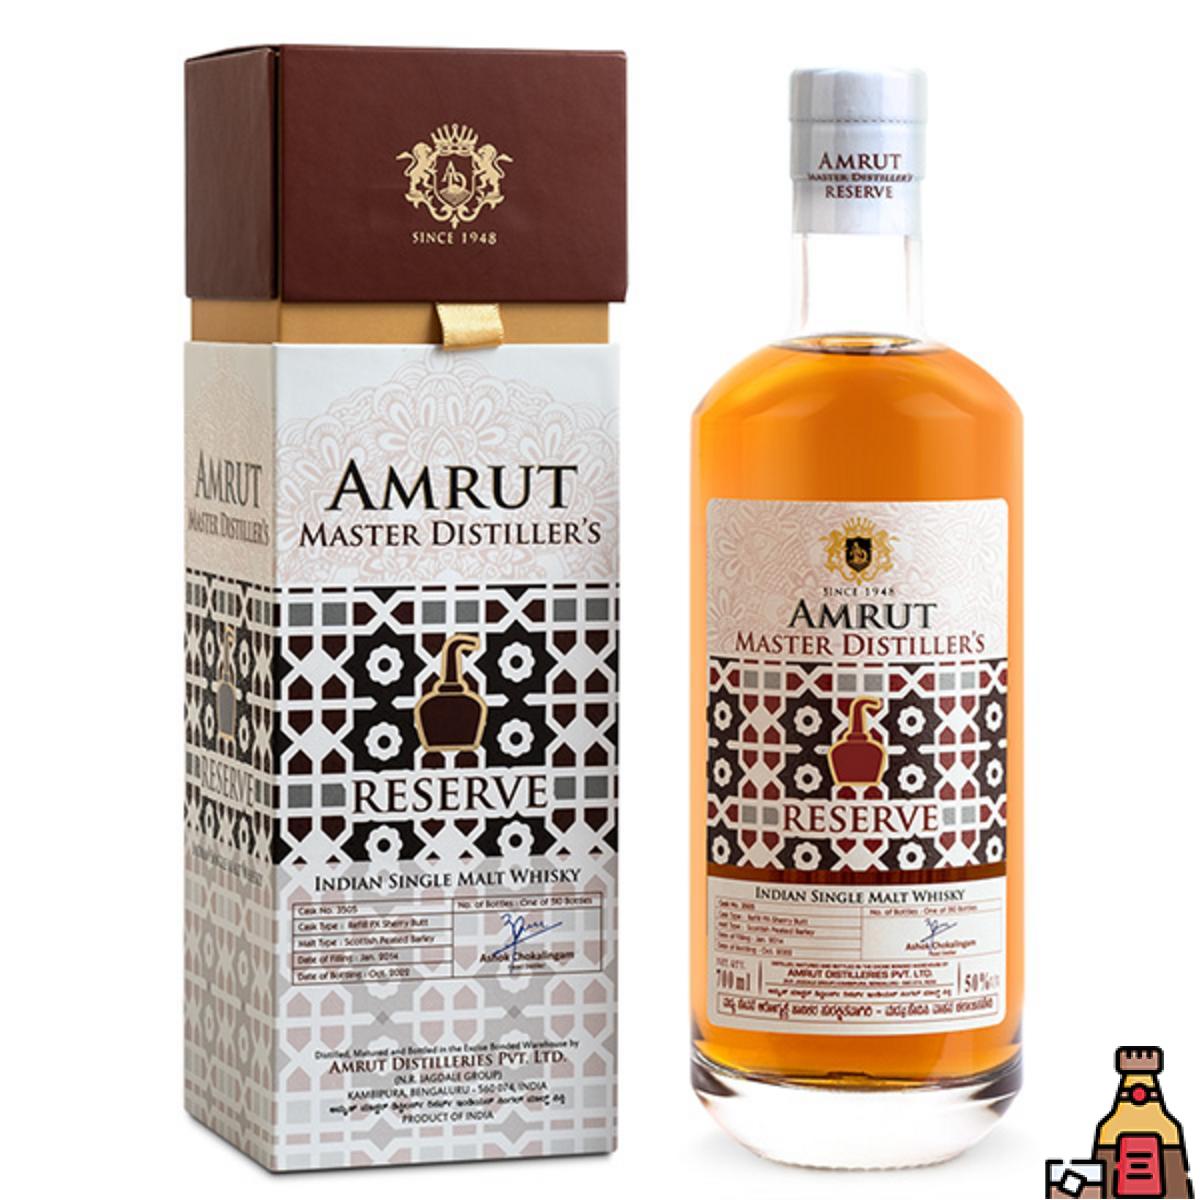 Amrut Master Distiller's Reserve Review